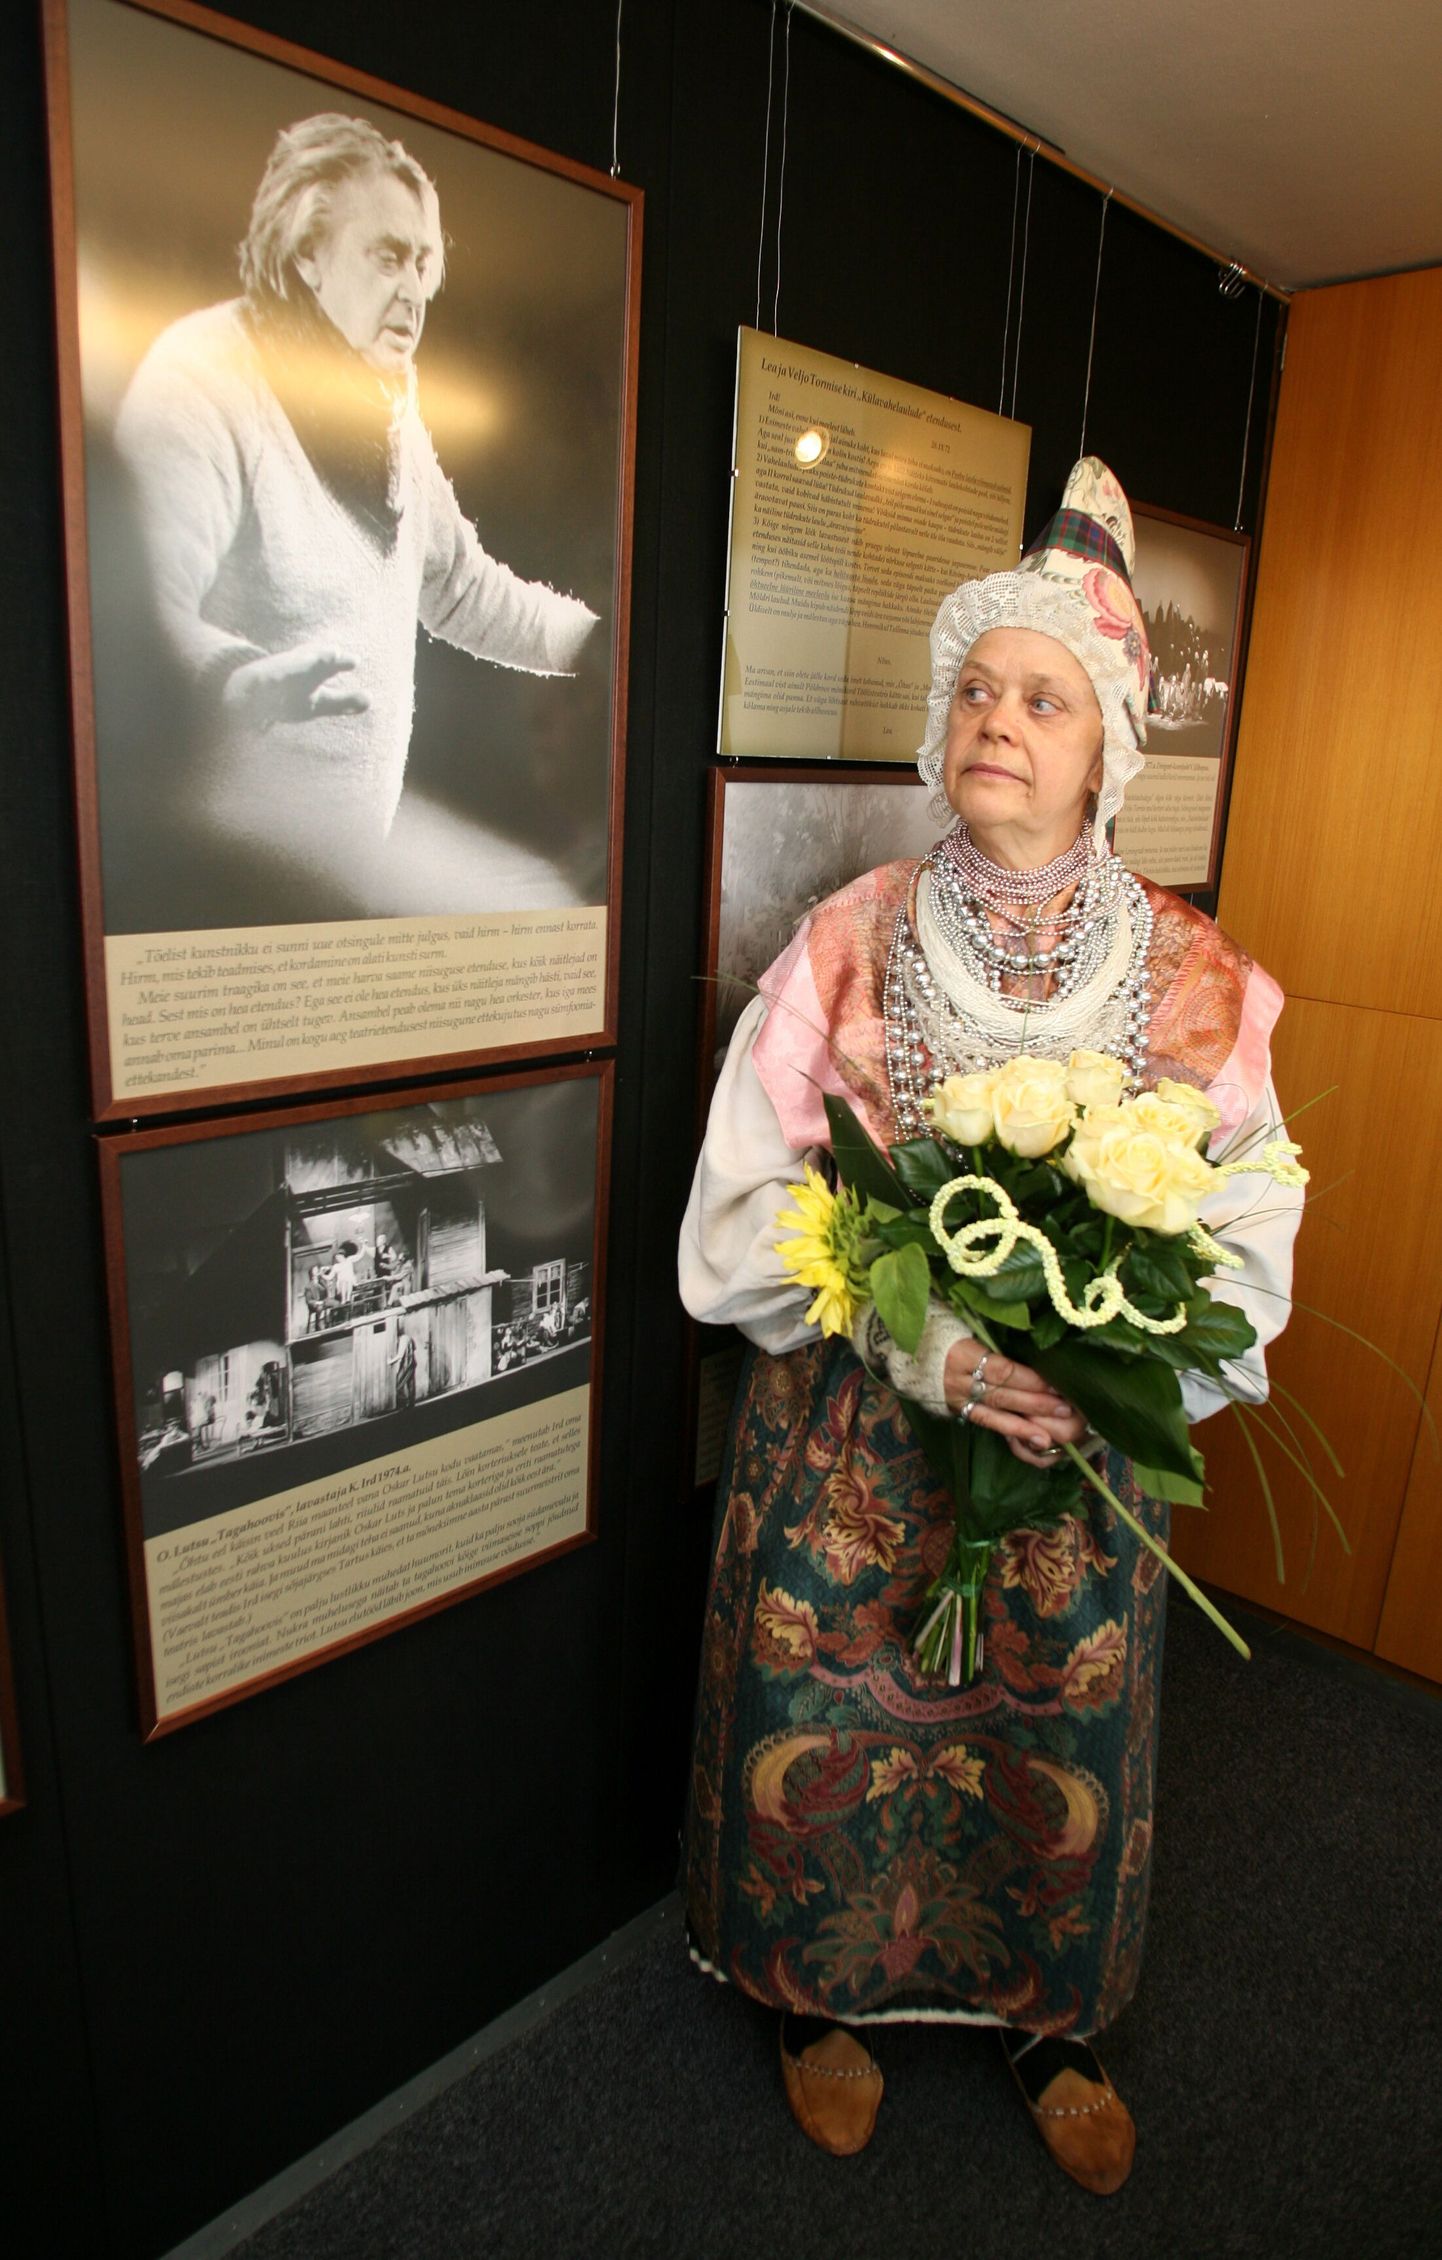 Vanemuises tähistati kunagise peanäitejuhi Kaarel Irdi 100. sünniaastapäeva näituse avamise ja raamatu tutvustamisega (pildil Kaarel Irdi tütar Mari Ird, kes koostas näituse).